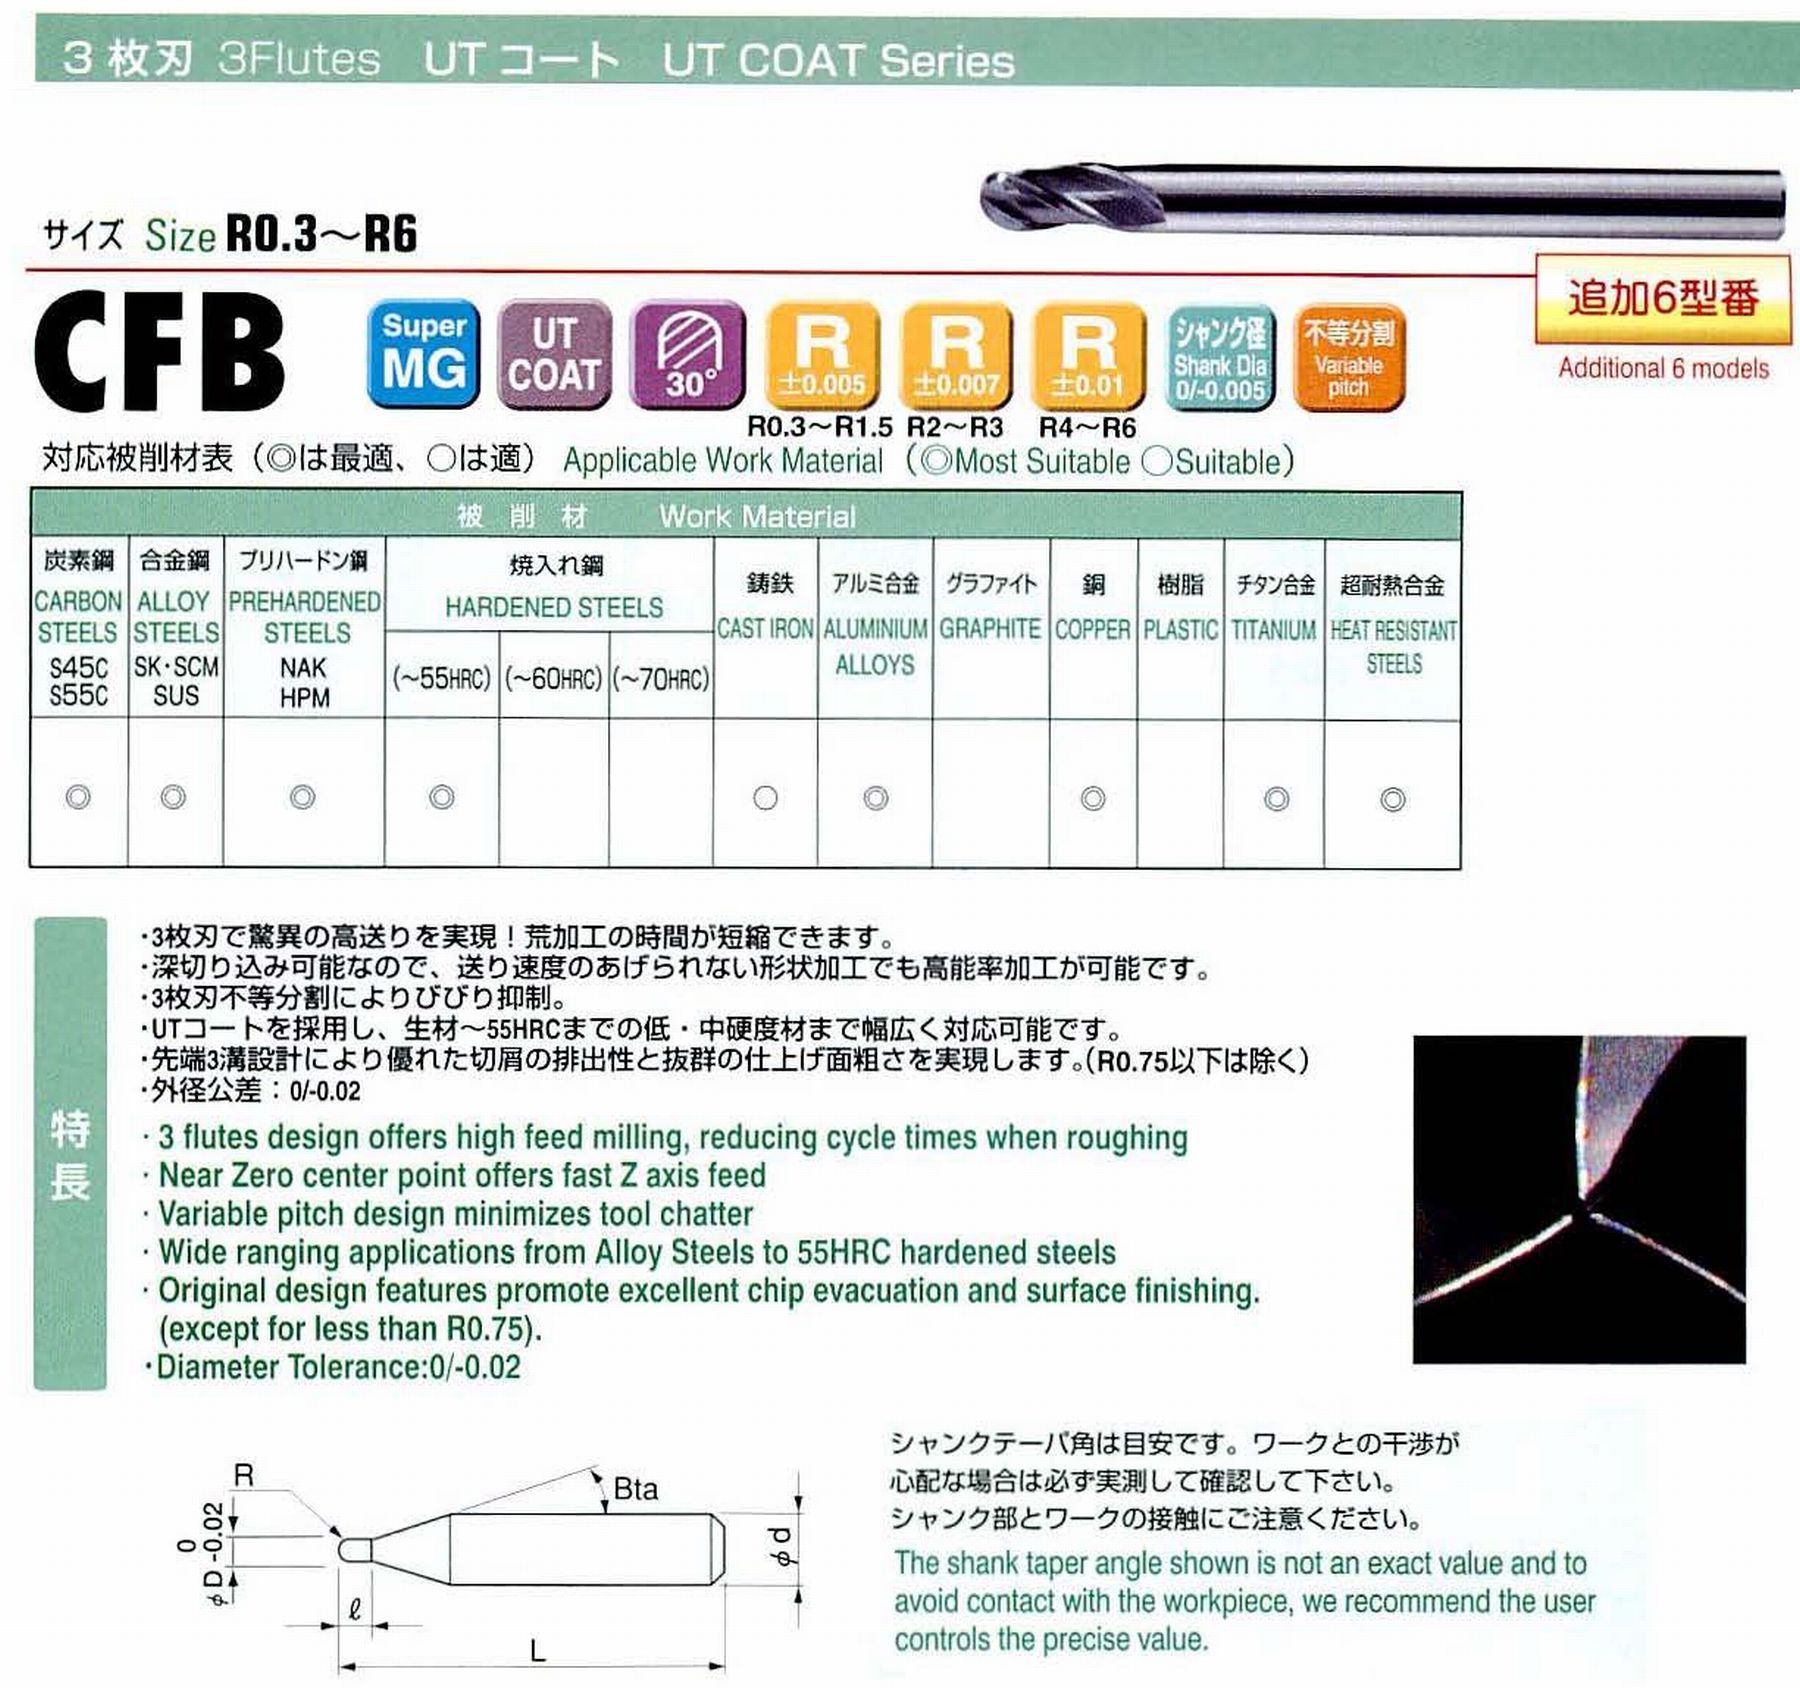 ユニオンツール 3枚刃 CFB3015-0225 ボール半径R0.75 刃長2.25 シャンクテーパ角16° 全長50 シャンク径4